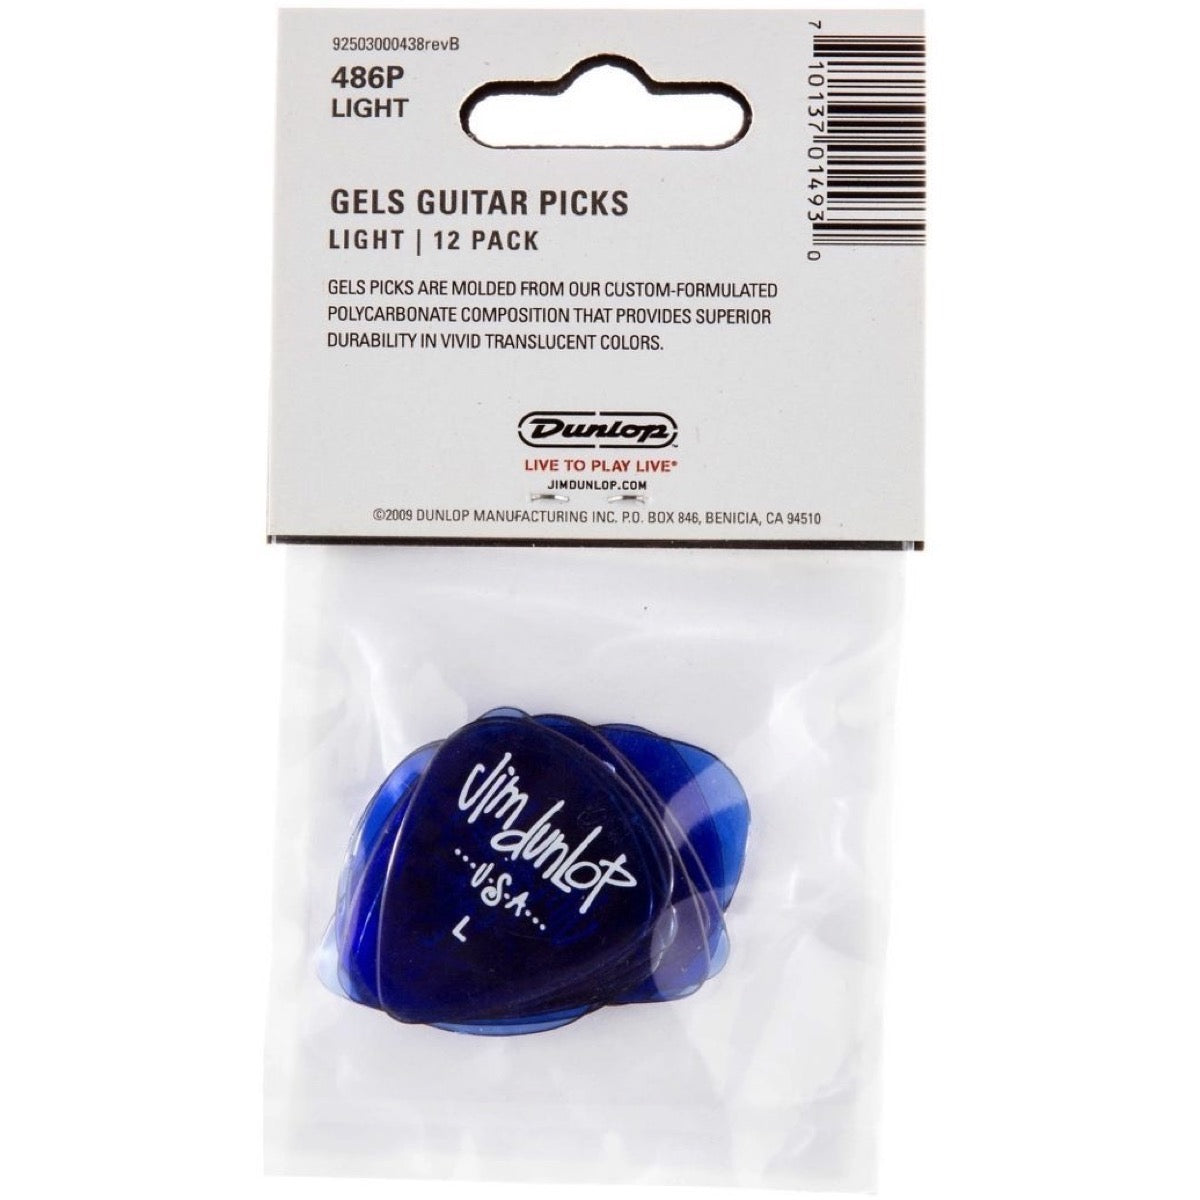 Dunlop Gel Guitar Picks (12-Pack), Blue, 486PLT, Light